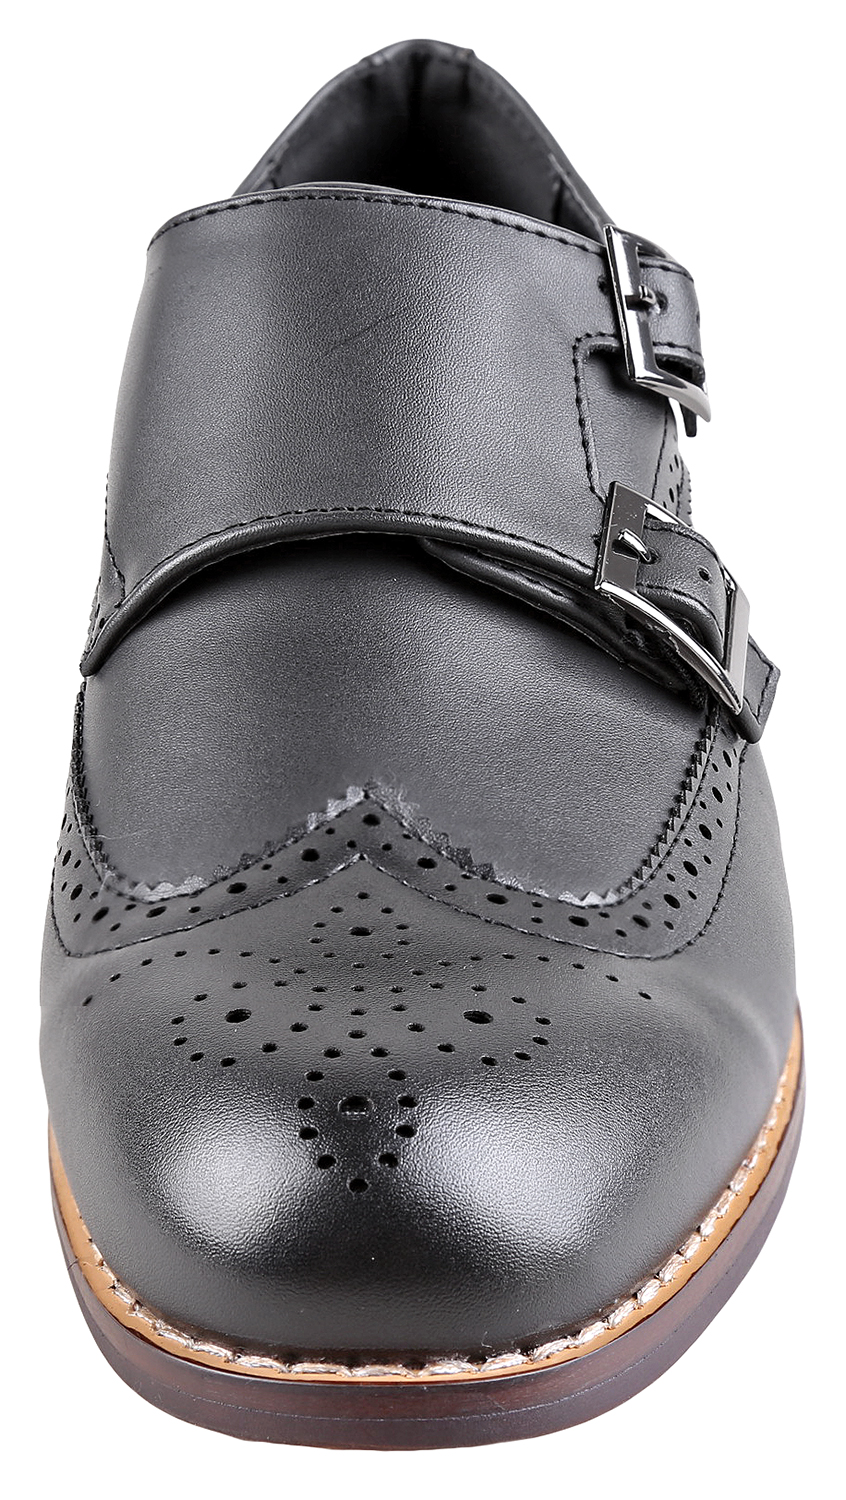 Urban Fox Allen Men's Dress Shoe | Double Monk Strap | Brogue | Wingtip Shoes for Men | Black 13 M US - image 3 of 7